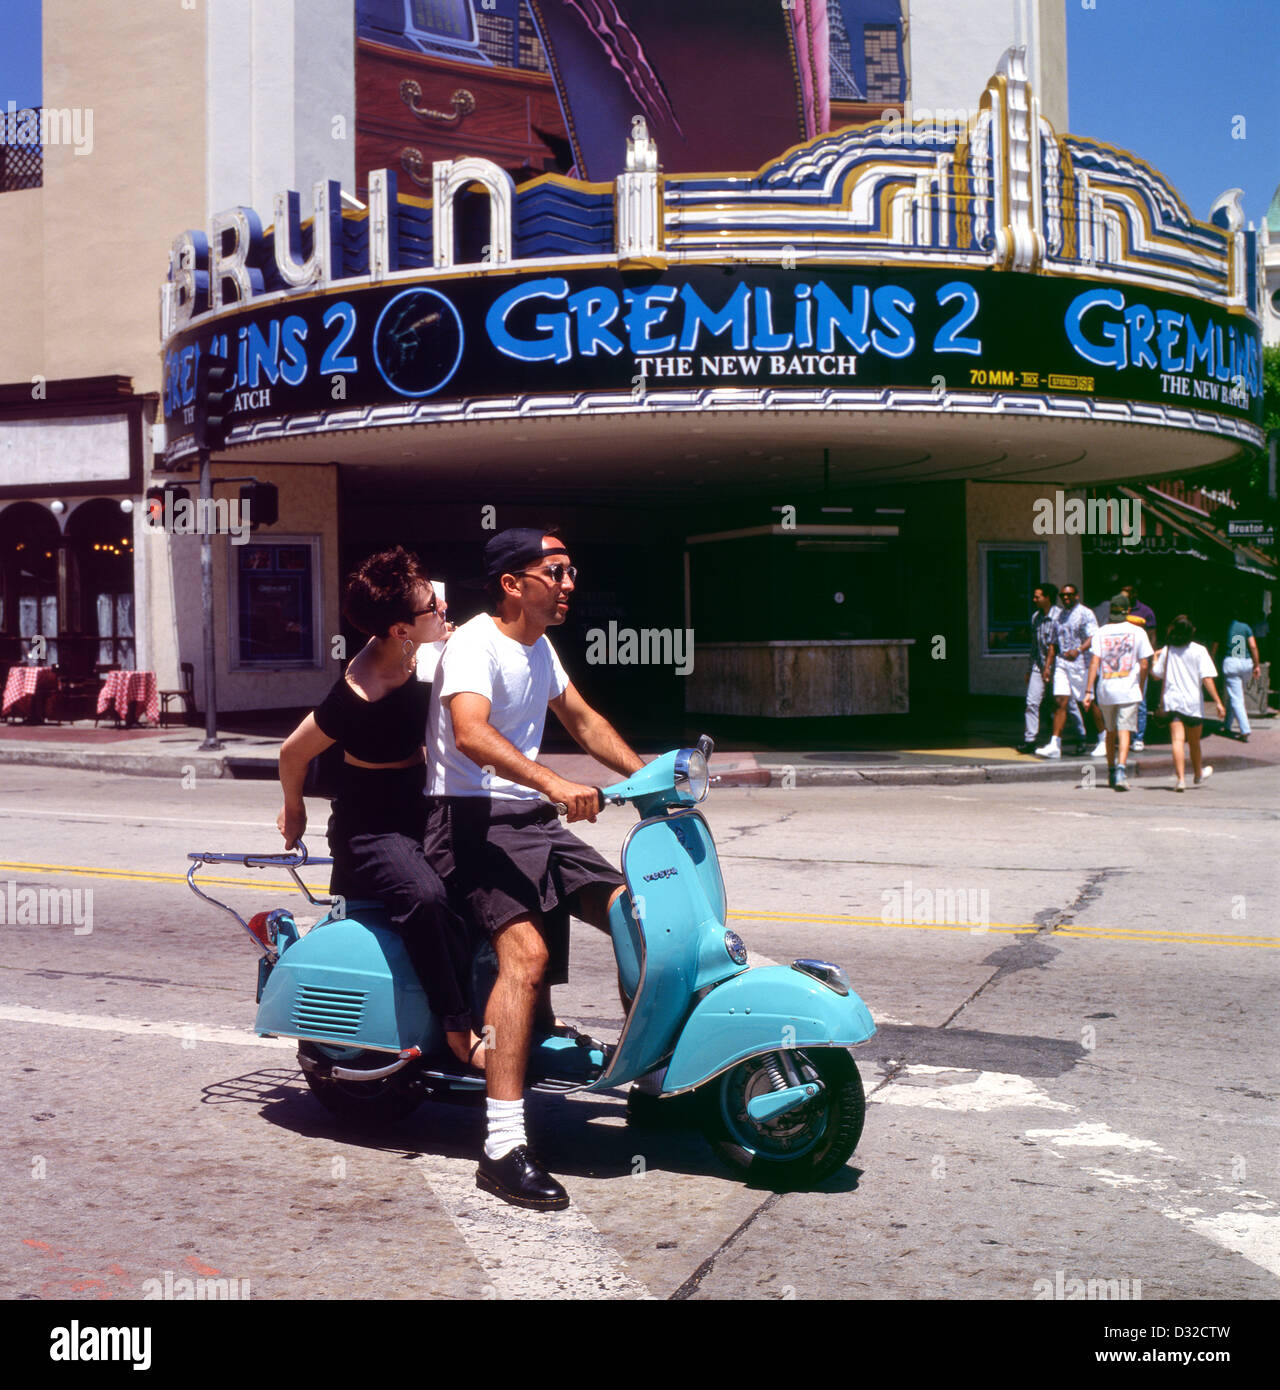 Paar auf einem Motorroller fahren vorbei Gremlins 2 Film im Bruin Westwood Village Theater Los Angeles LA California in 1989 1990 US USA KATHY DEWITT Stockfoto